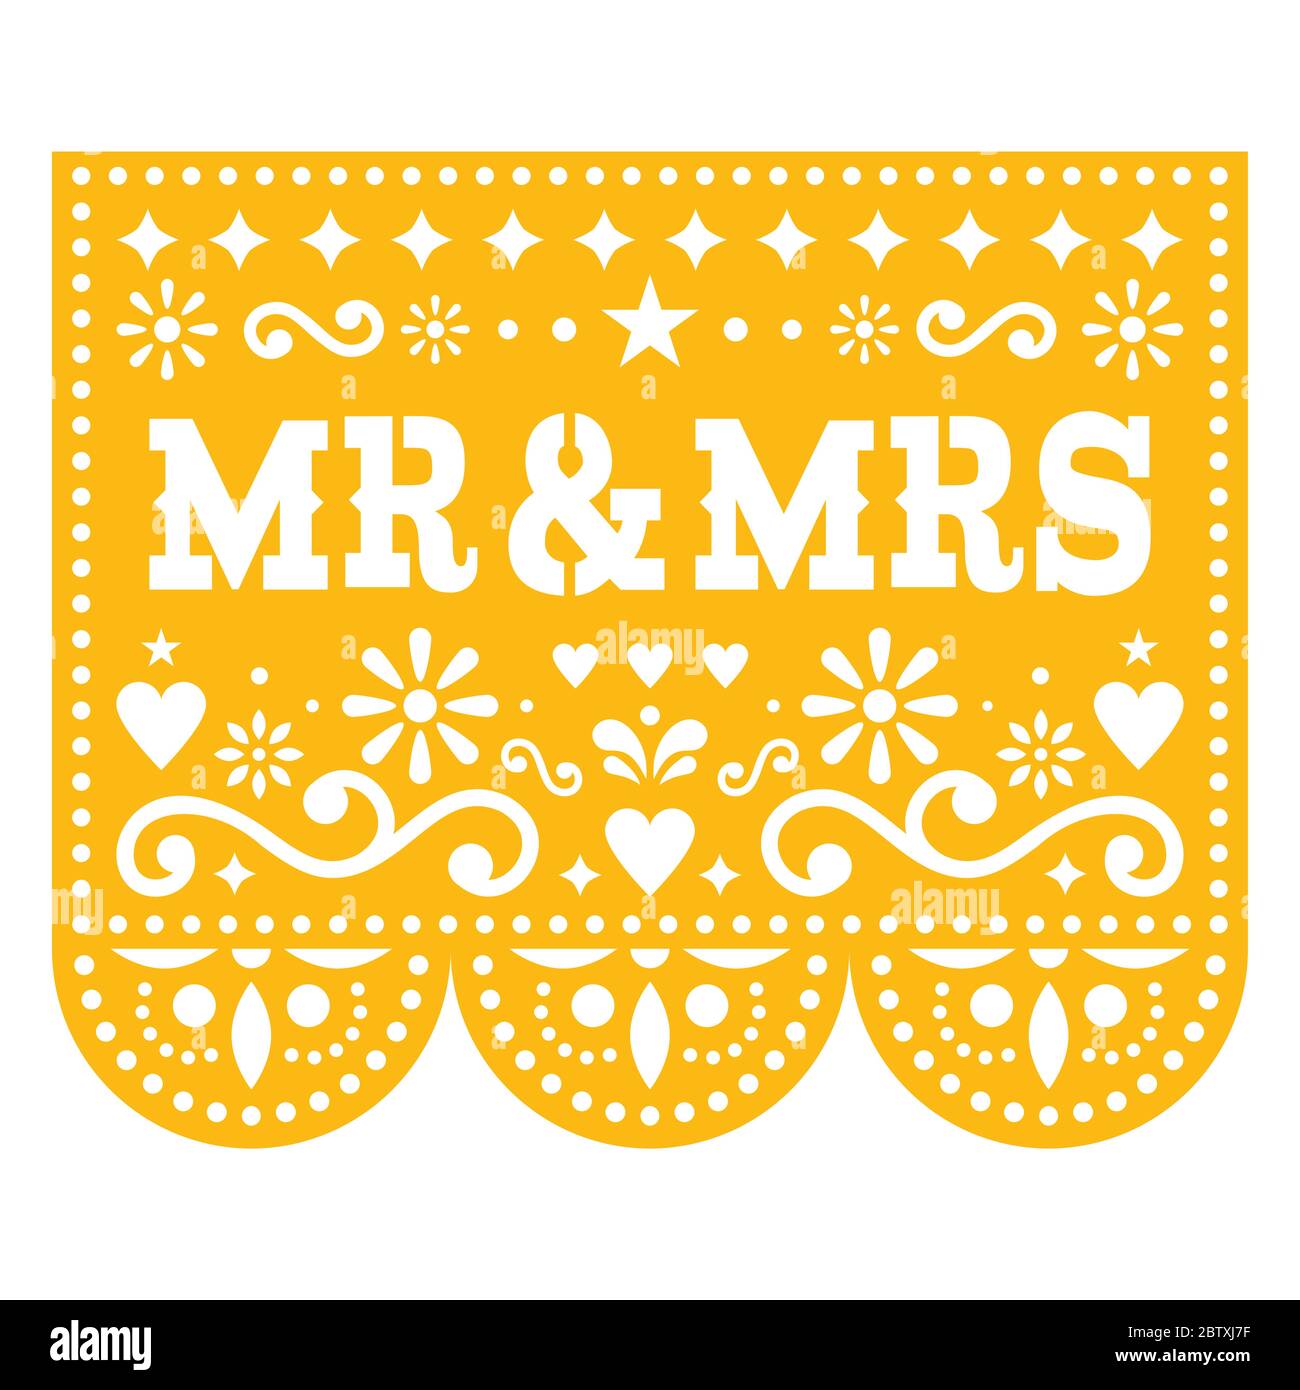 Herr und Frau Papel Picado Vektor Hochzeit Grußkarte Design, mexikanische Papier ausgeschnitten Dekoration mit Blumen Stock Vektor